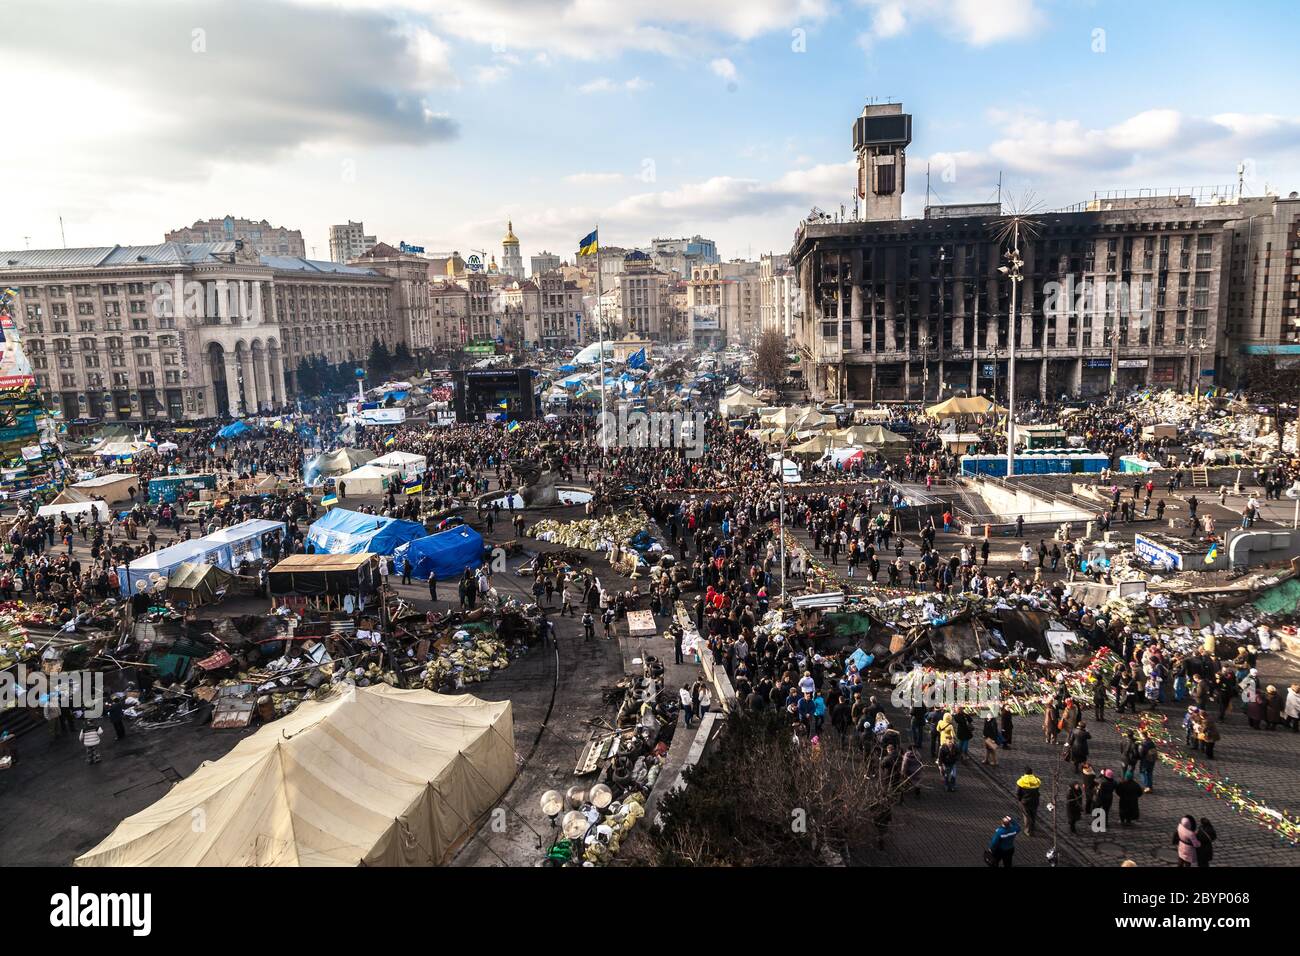 Ukrainische Revolution, Euromaidan nach einem Angriff durch Regierungskräfte Stockfoto